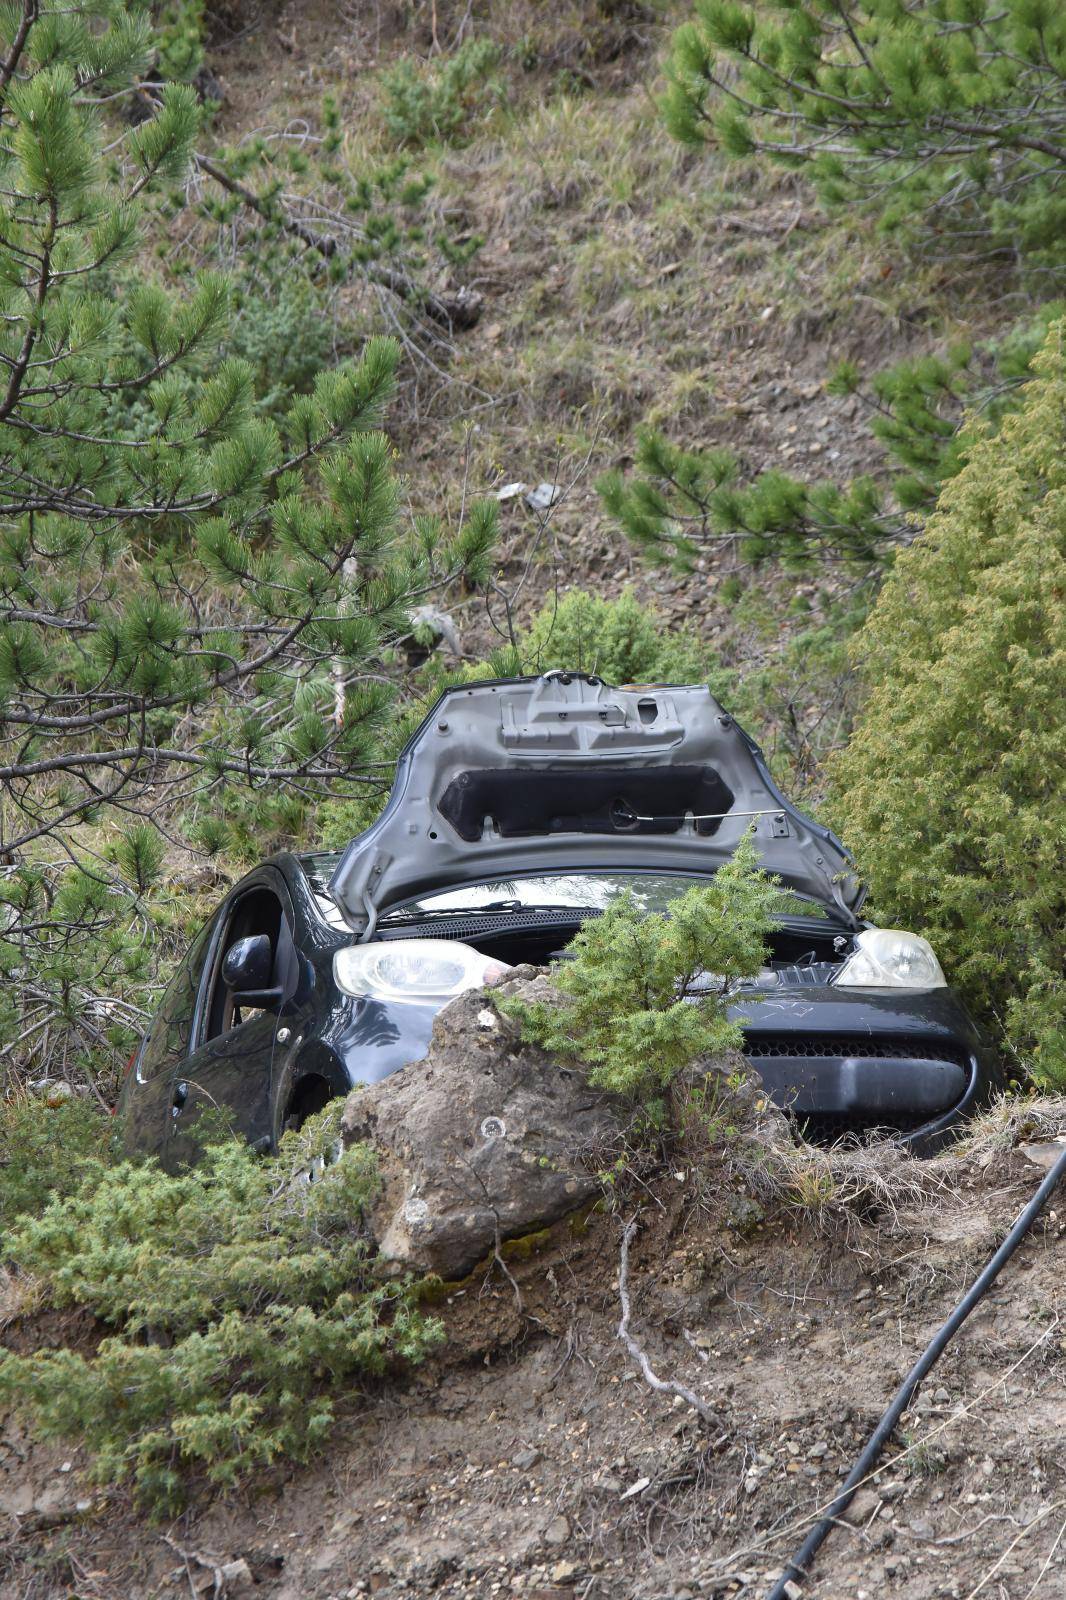 Boljun: U prometnoj nesreÃ¦i nakon slijetanja s ceste poginula je vozaÃ¨ica